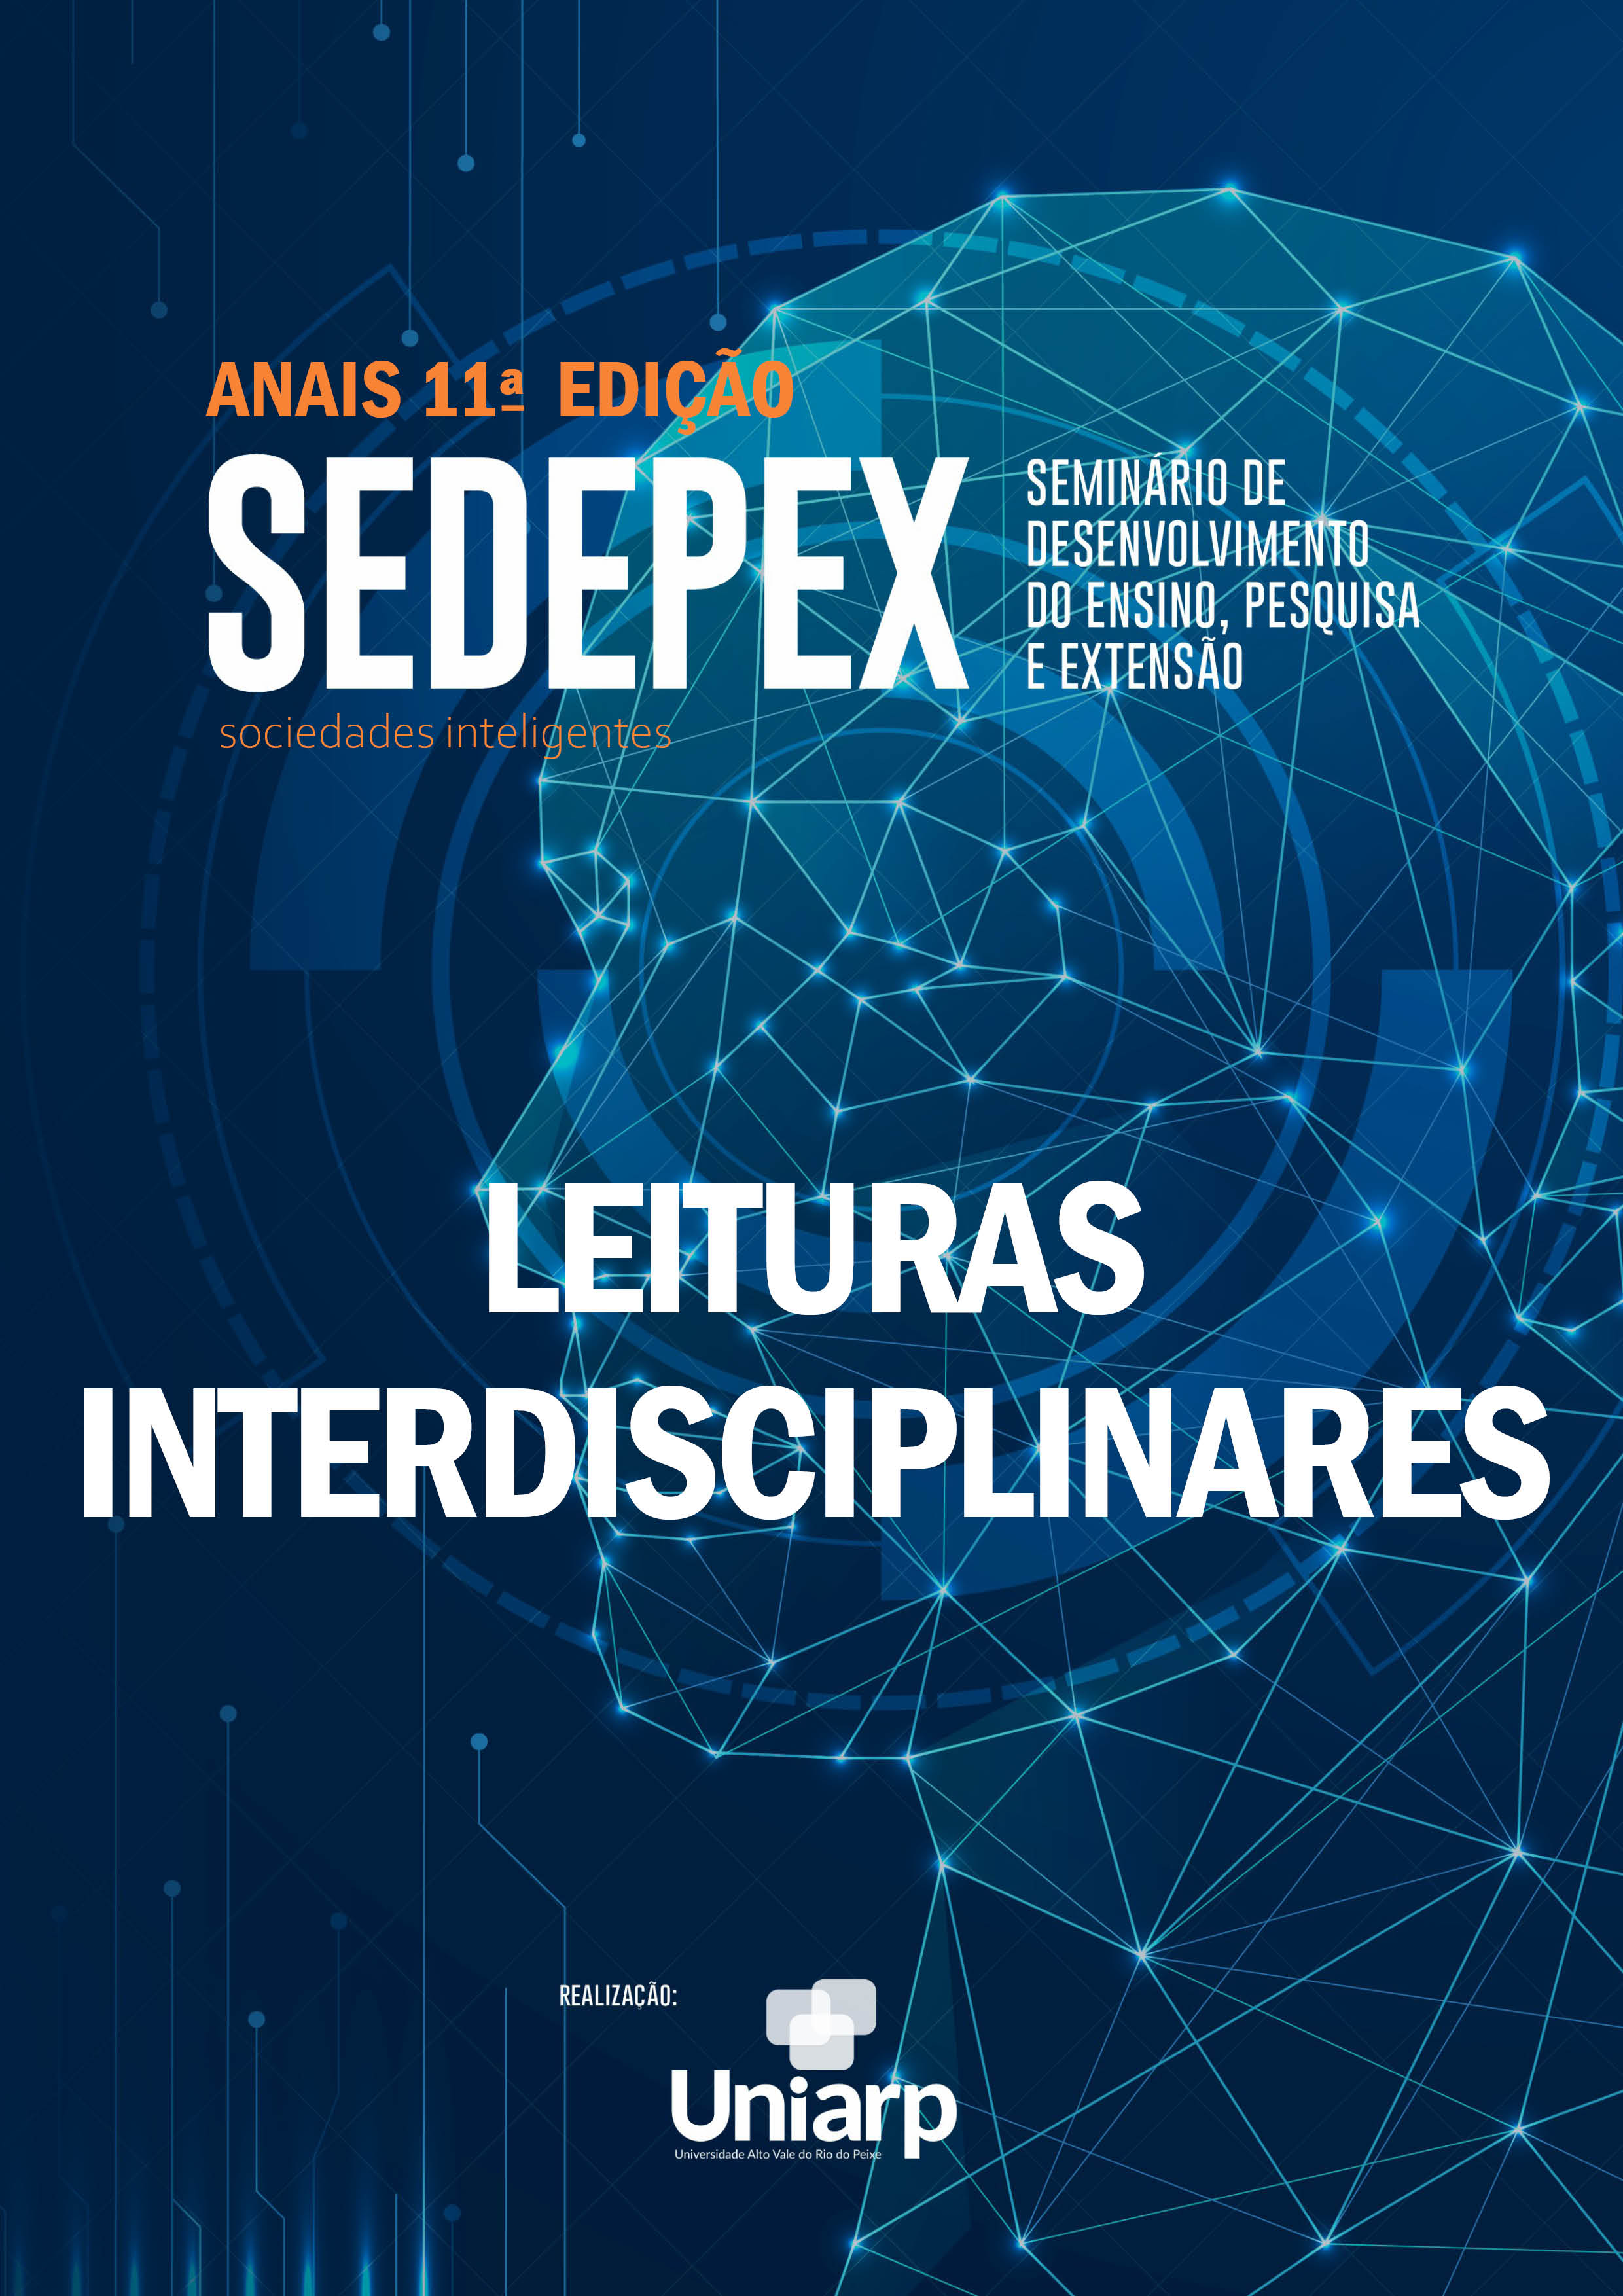 Capa Leituras Interdisciplinares SEDEPEX